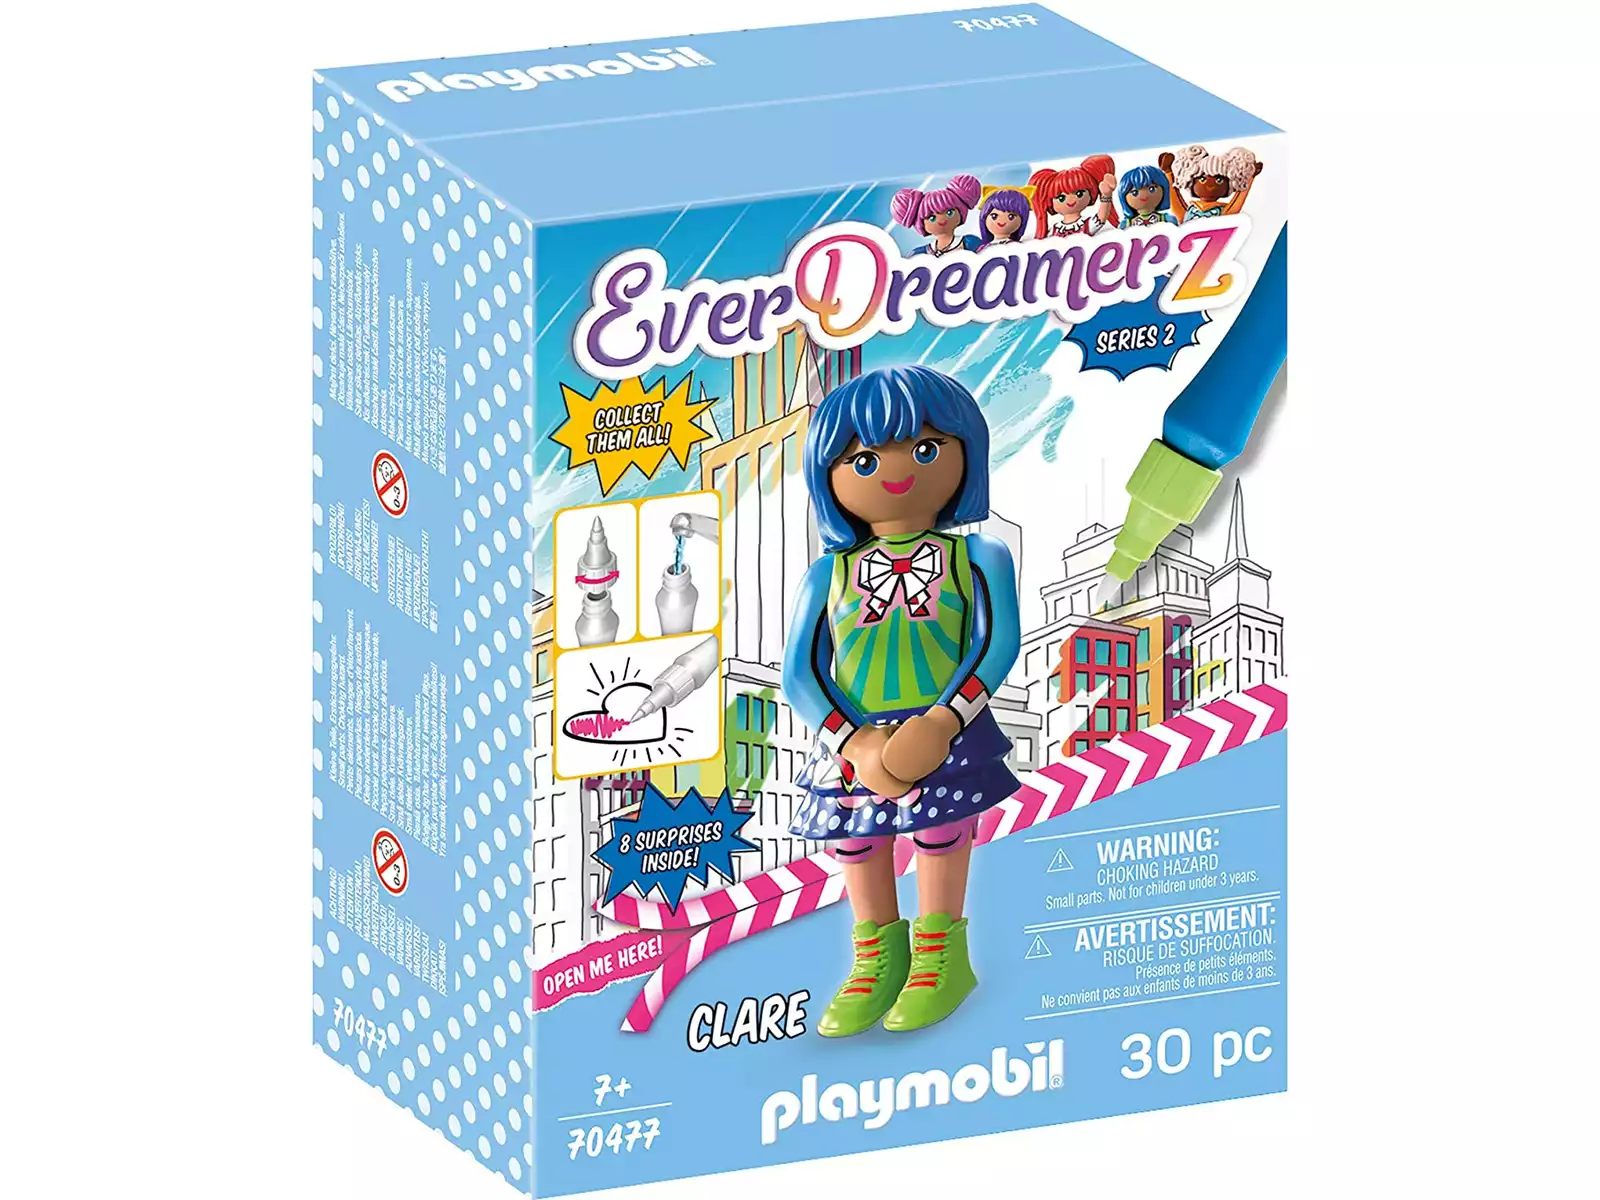 Acheter Playmobil figurine surprise fille série 23 70639 - Juguetilandia